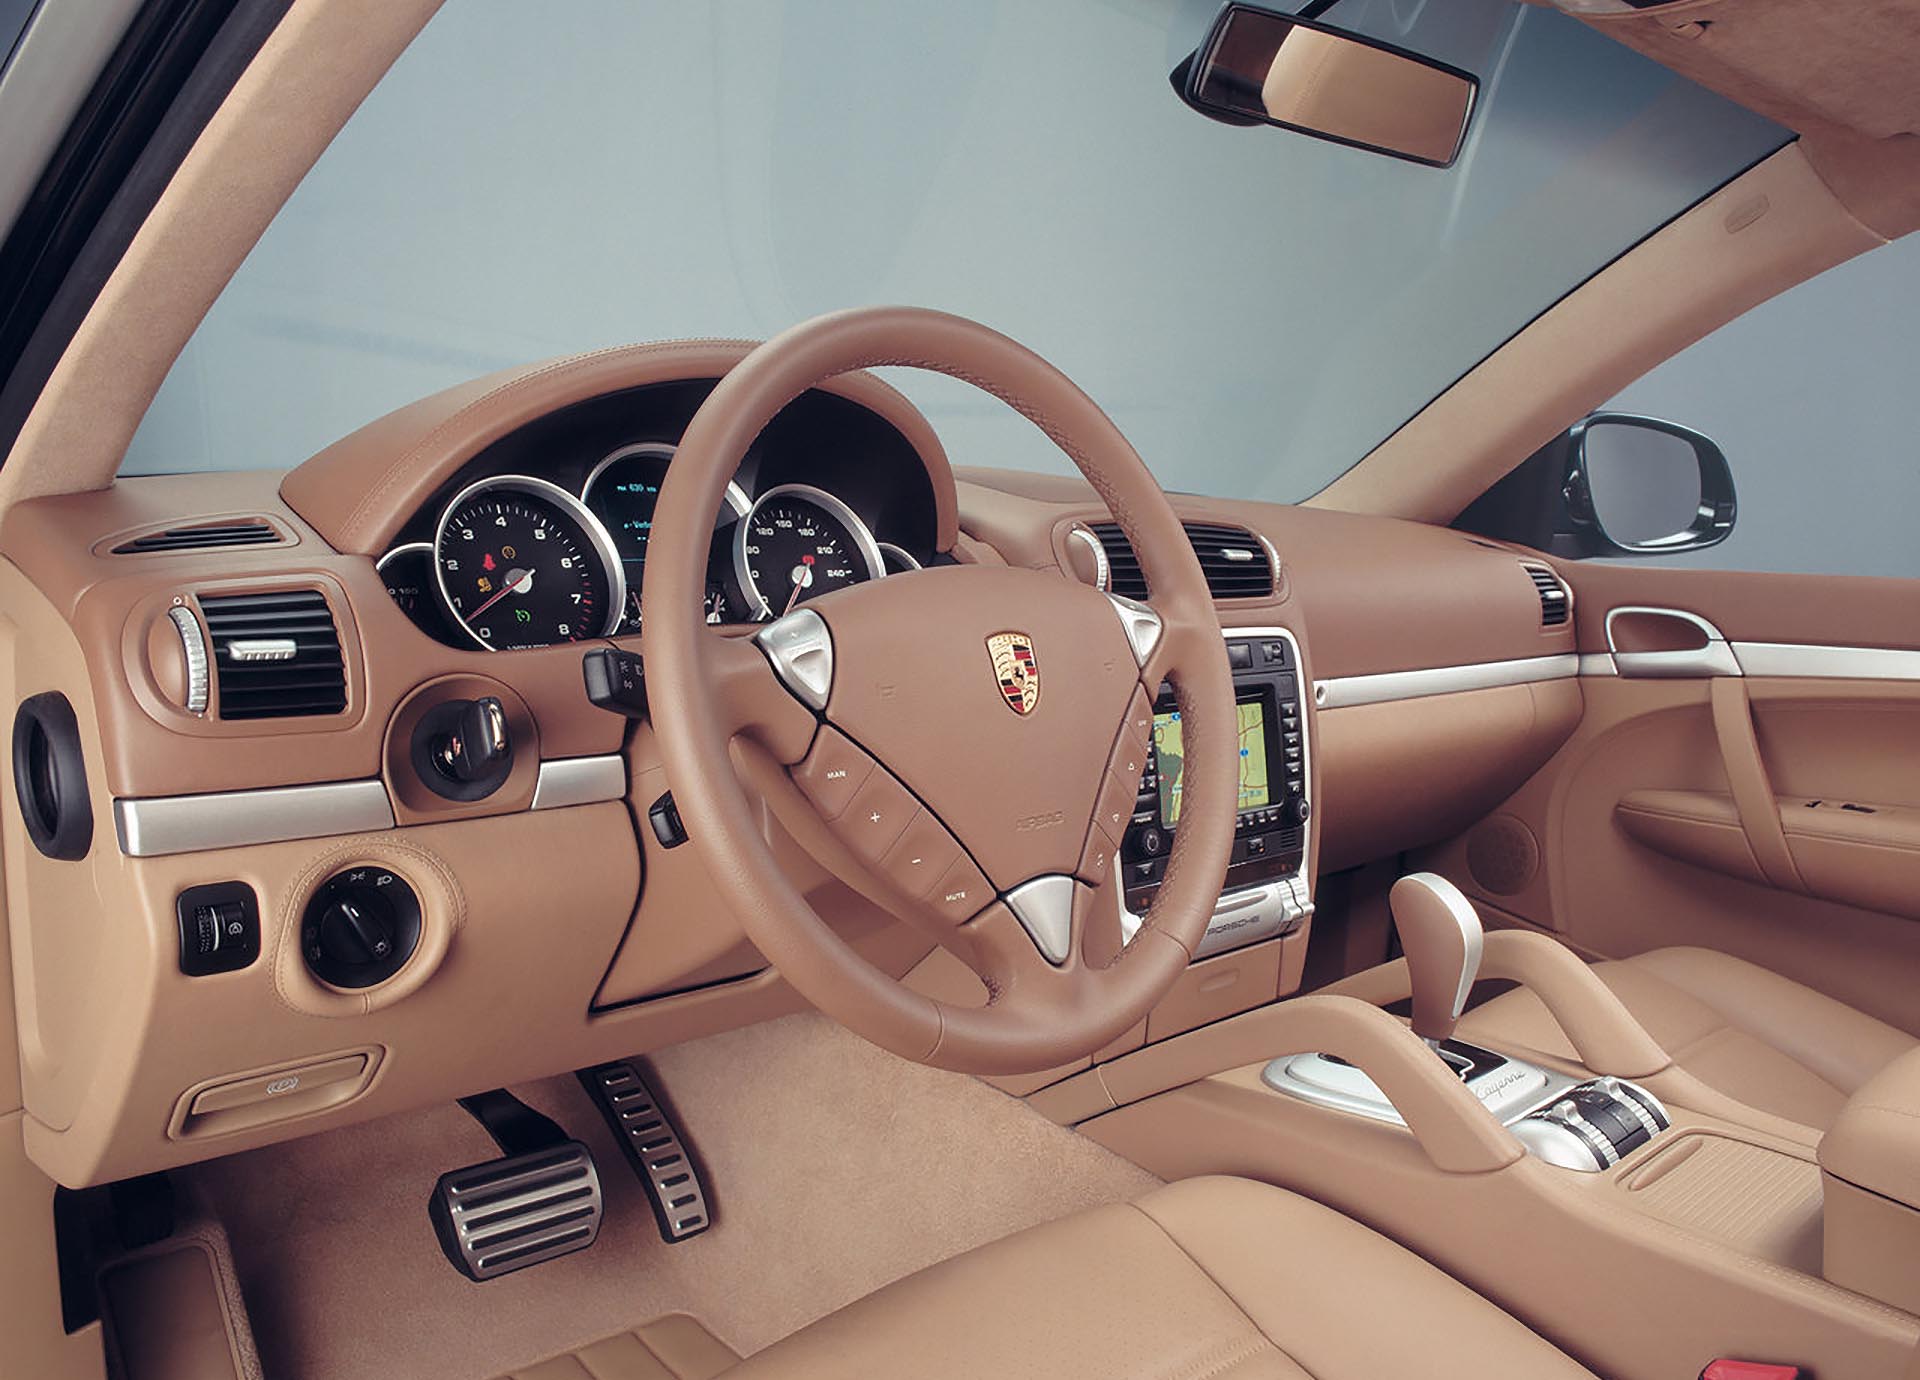 02_955 Porsche Cayenne S interior